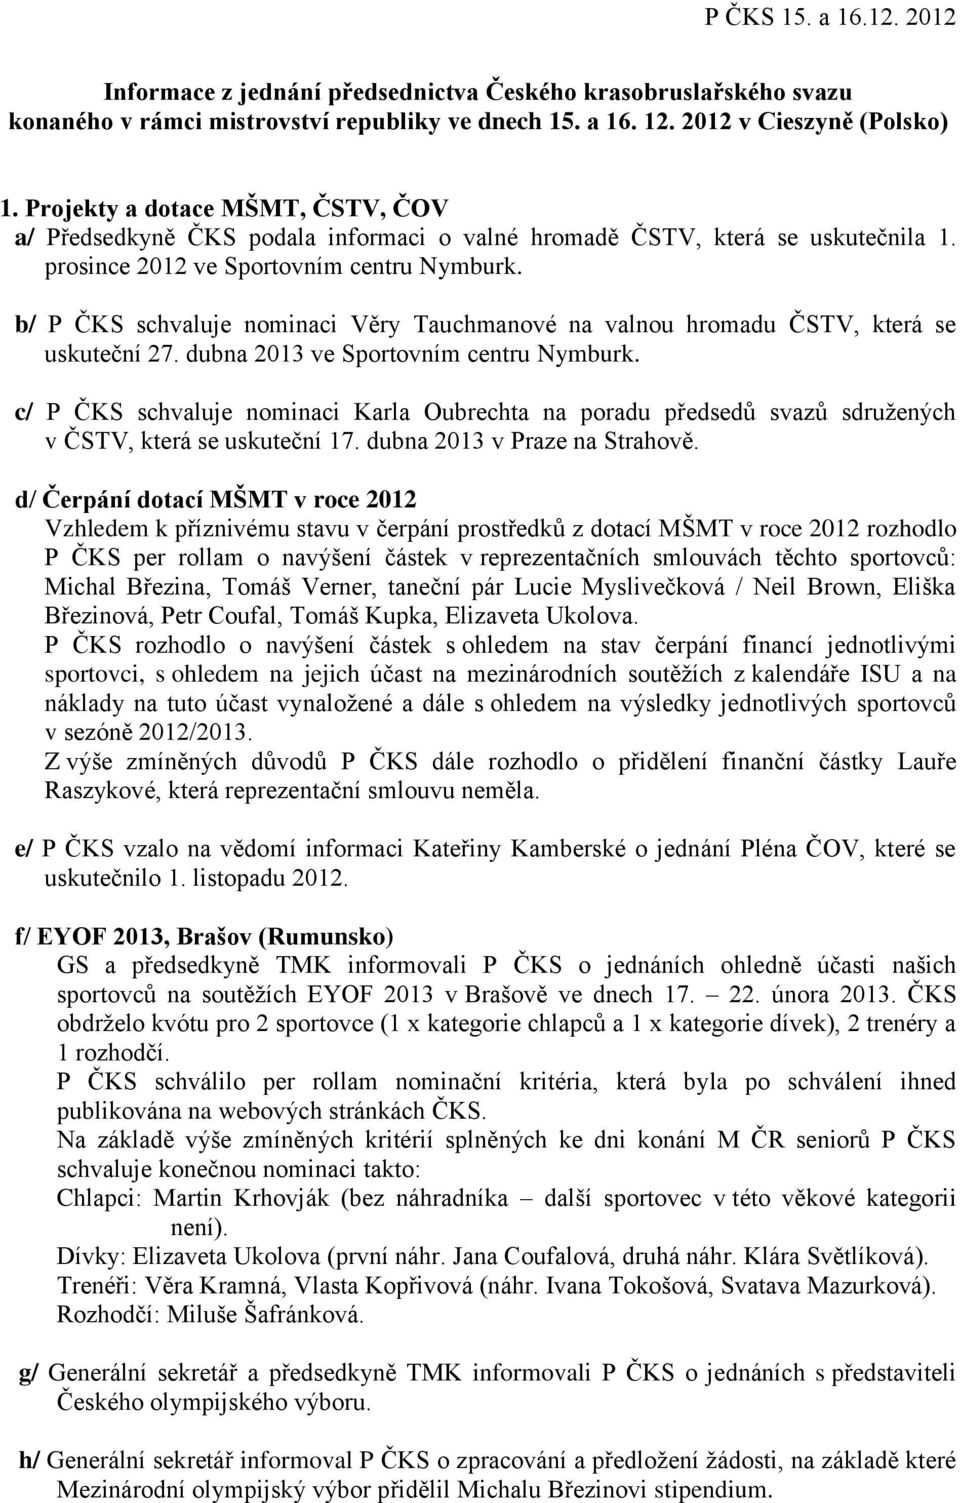 b/ P ČKS schvaluje nominaci Věry Tauchmanové na valnou hromadu ČSTV, která se uskuteční 27. dubna 2013 ve Sportovním centru Nymburk.